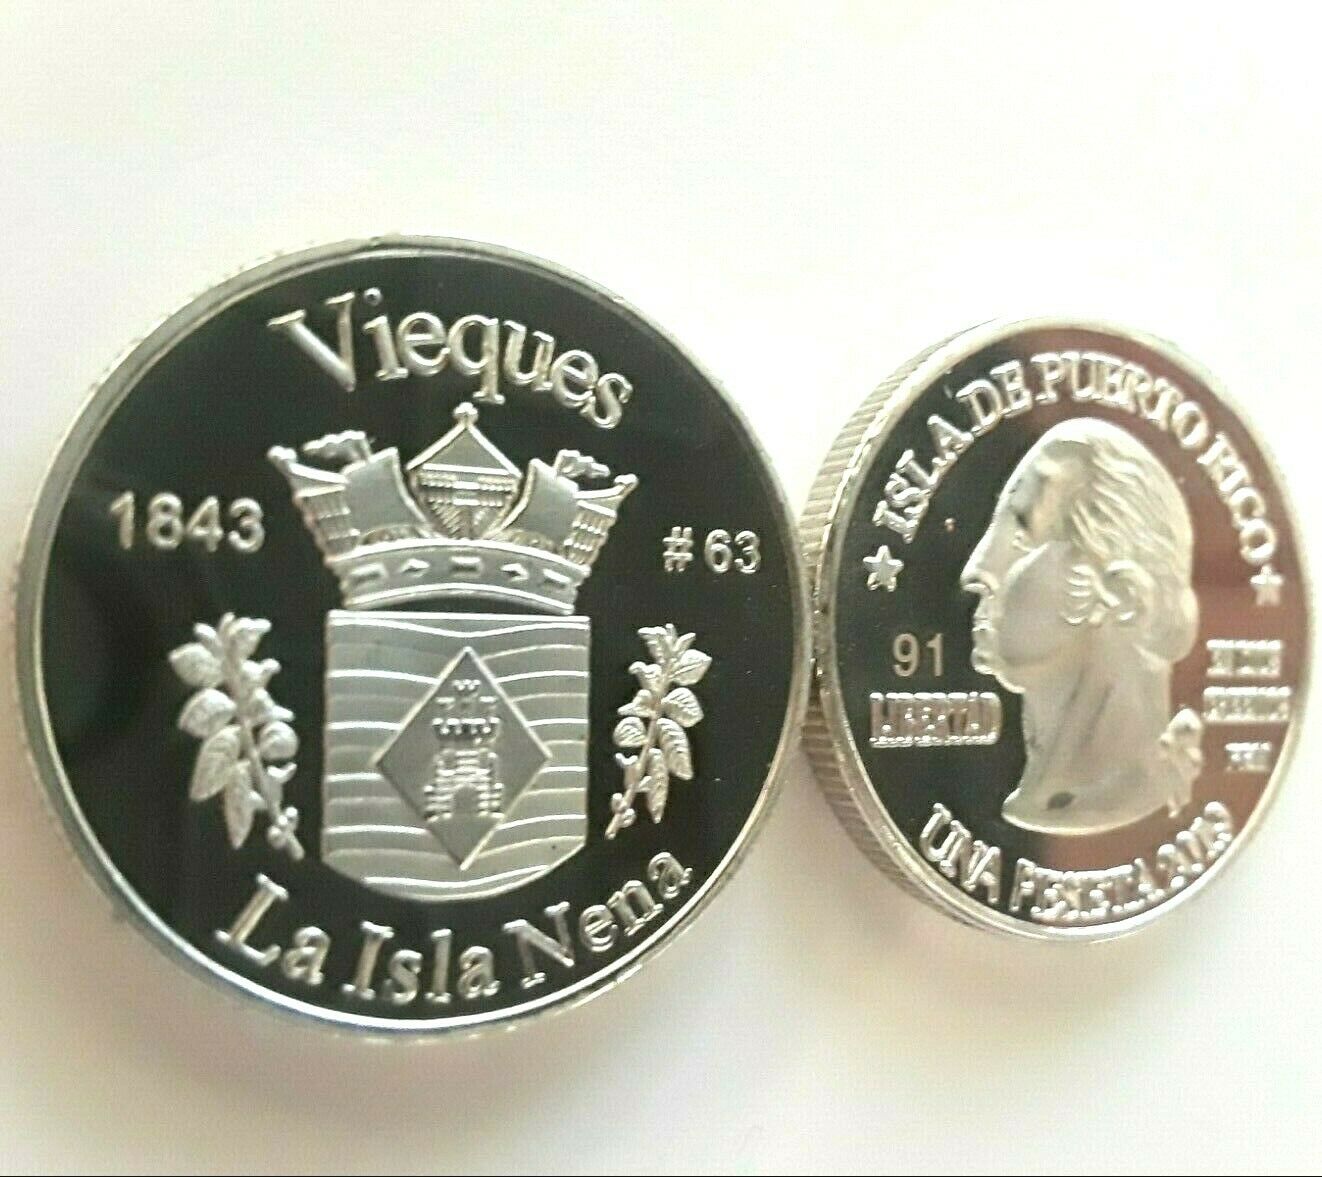 Peseta Vieques Island 2019 Serie Pueblo Puerto Rico Plata Boricua Silver Quarter